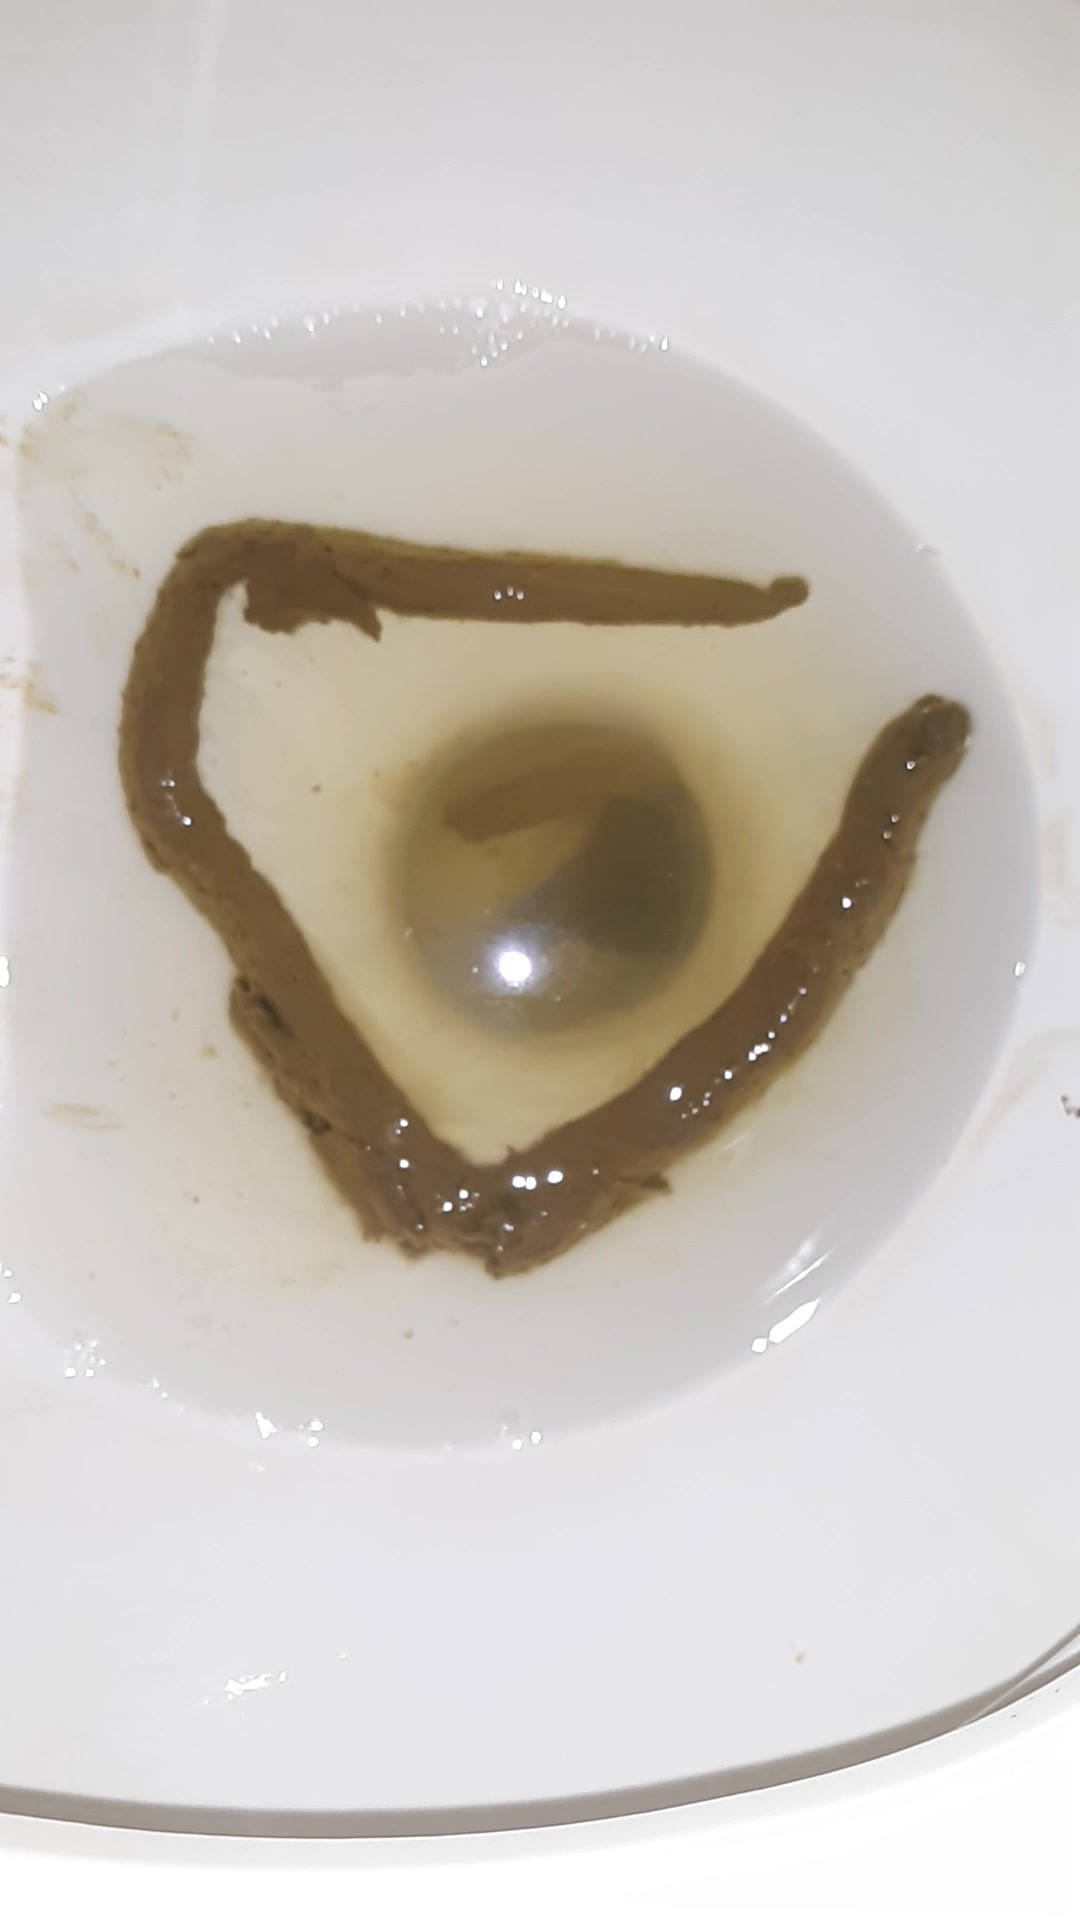 Toilet Flushing of My Turd